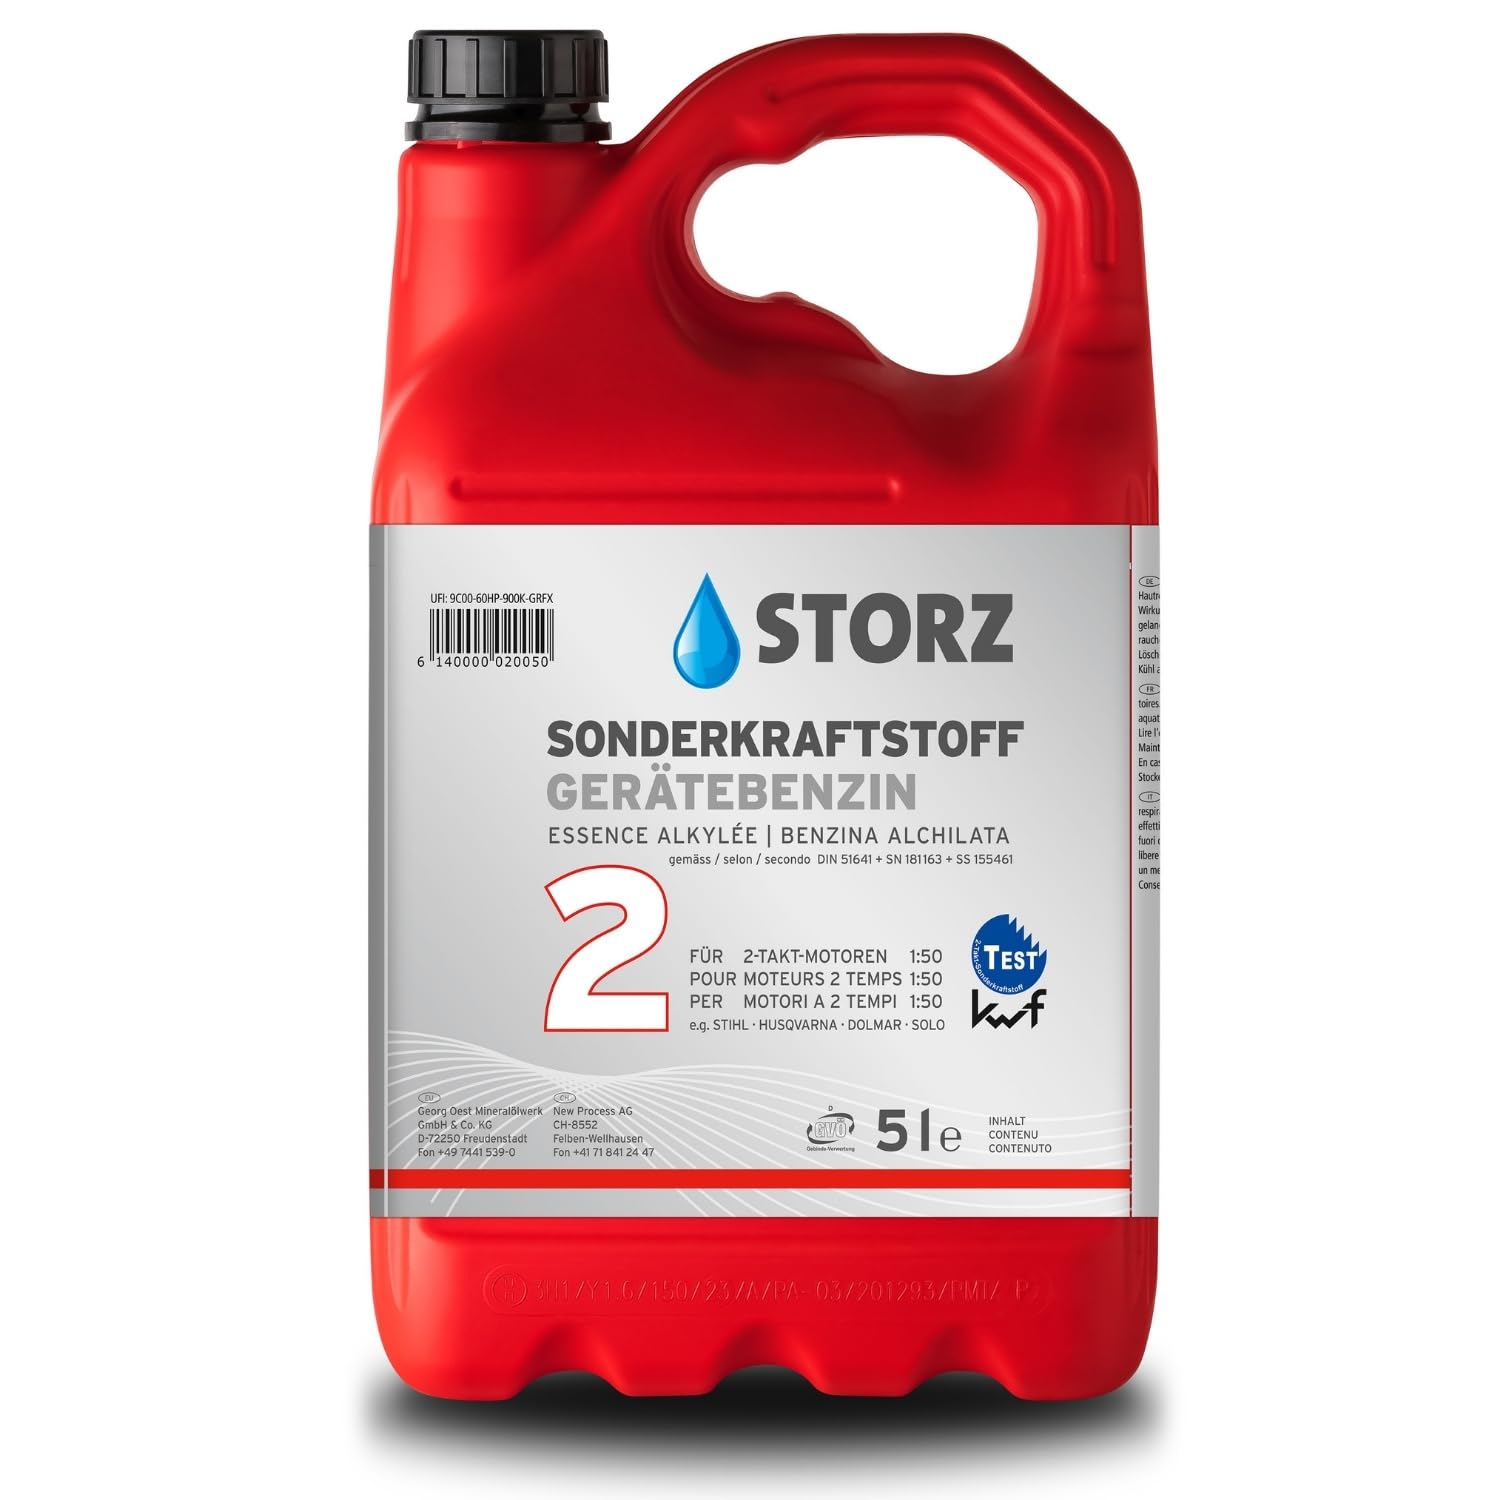 Storz 2T Gerätebenzin - 5 Liter Kanister | Sonderkraftstoff | Alkylatbenzin 1:25-1:50 von OEST